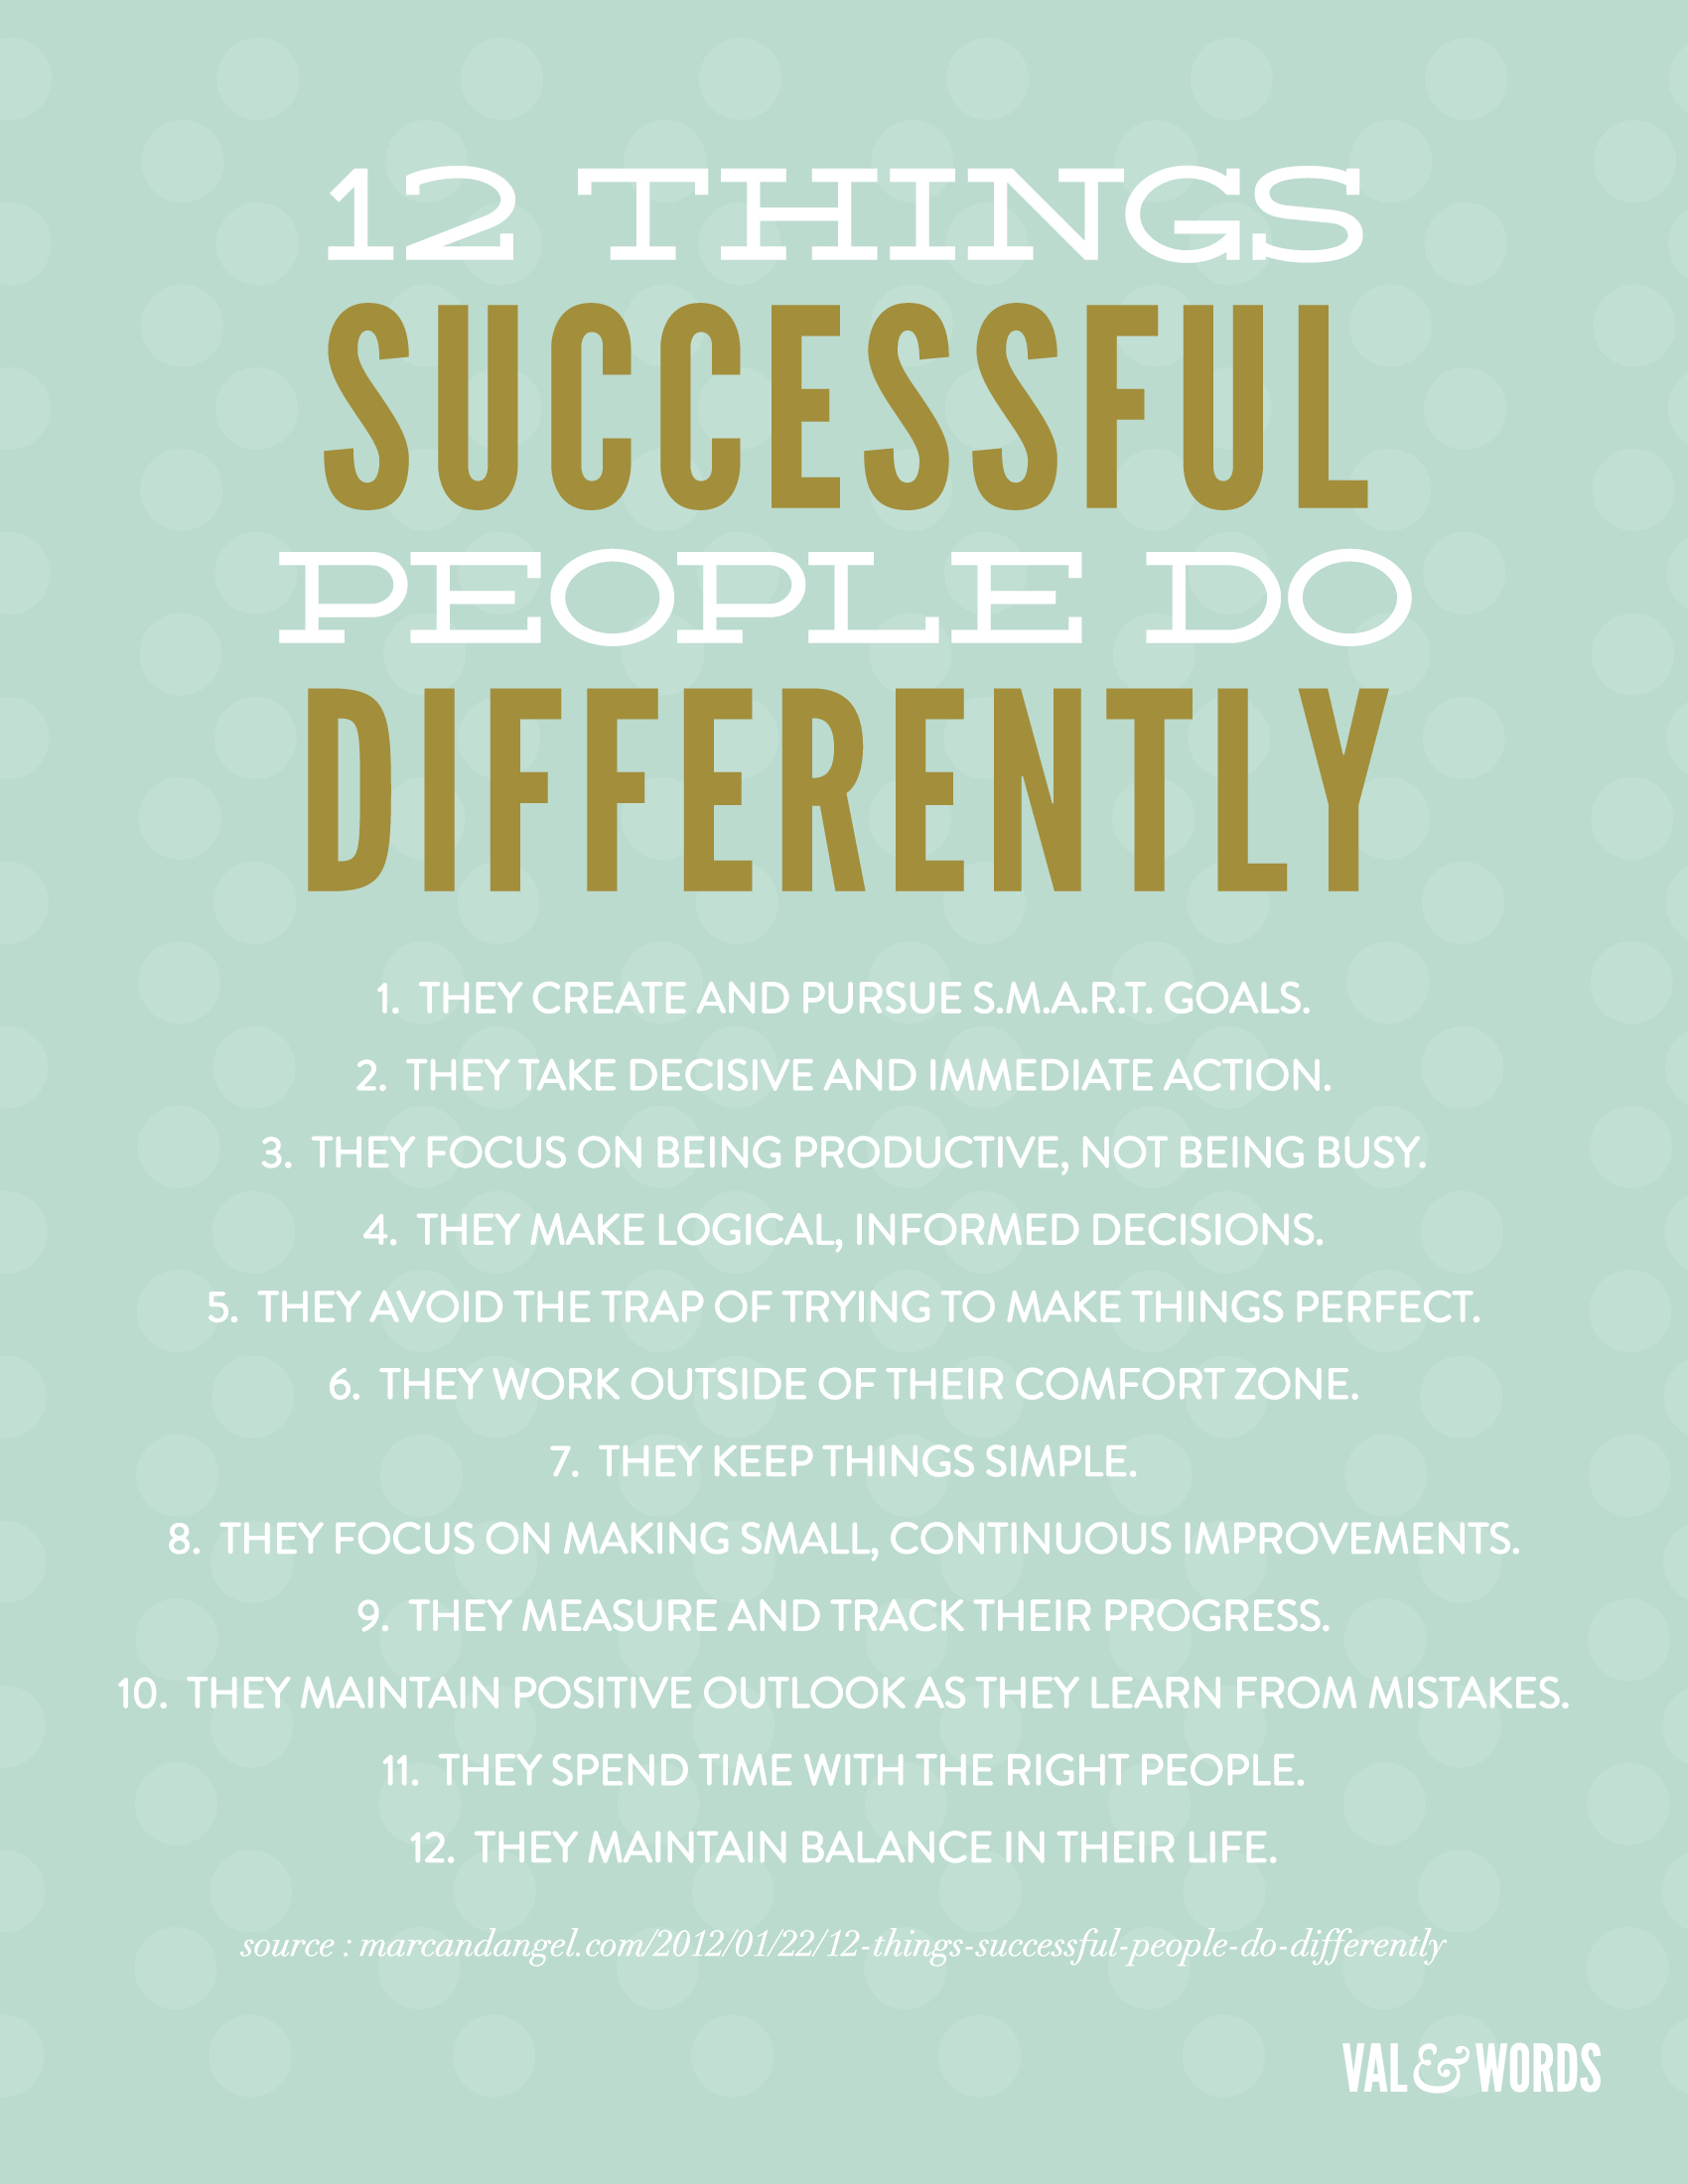 12-things-successful-people-do-1.jpg